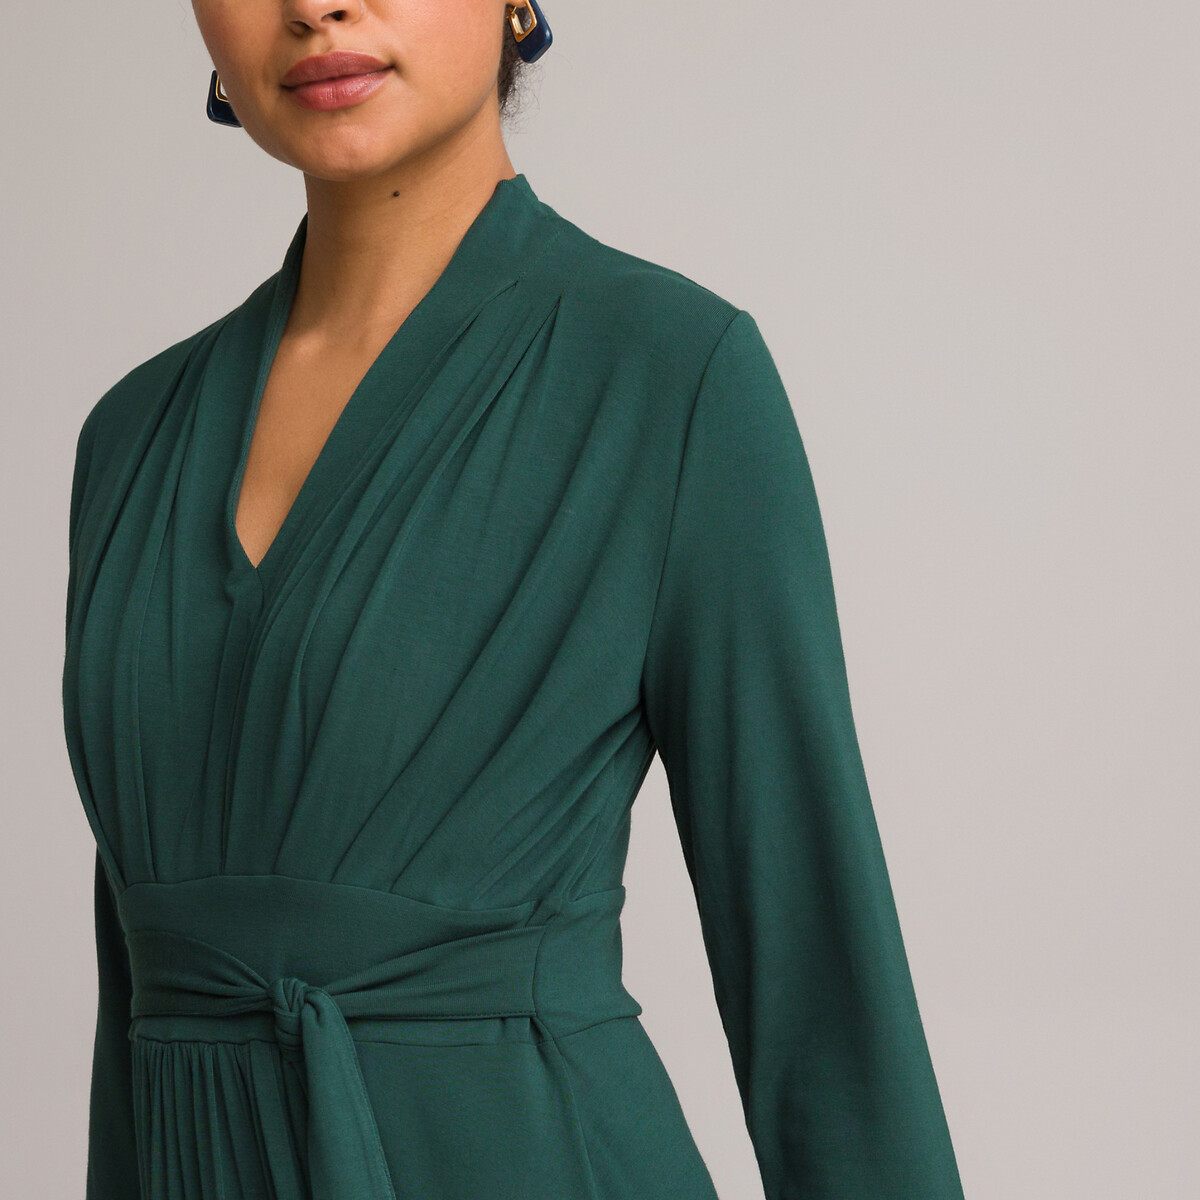 Платье ANNE WEYBURN Платье Расклешенное из струящегося трикотажа с рукавами 34 42 зеленый, размер 42 - фото 3